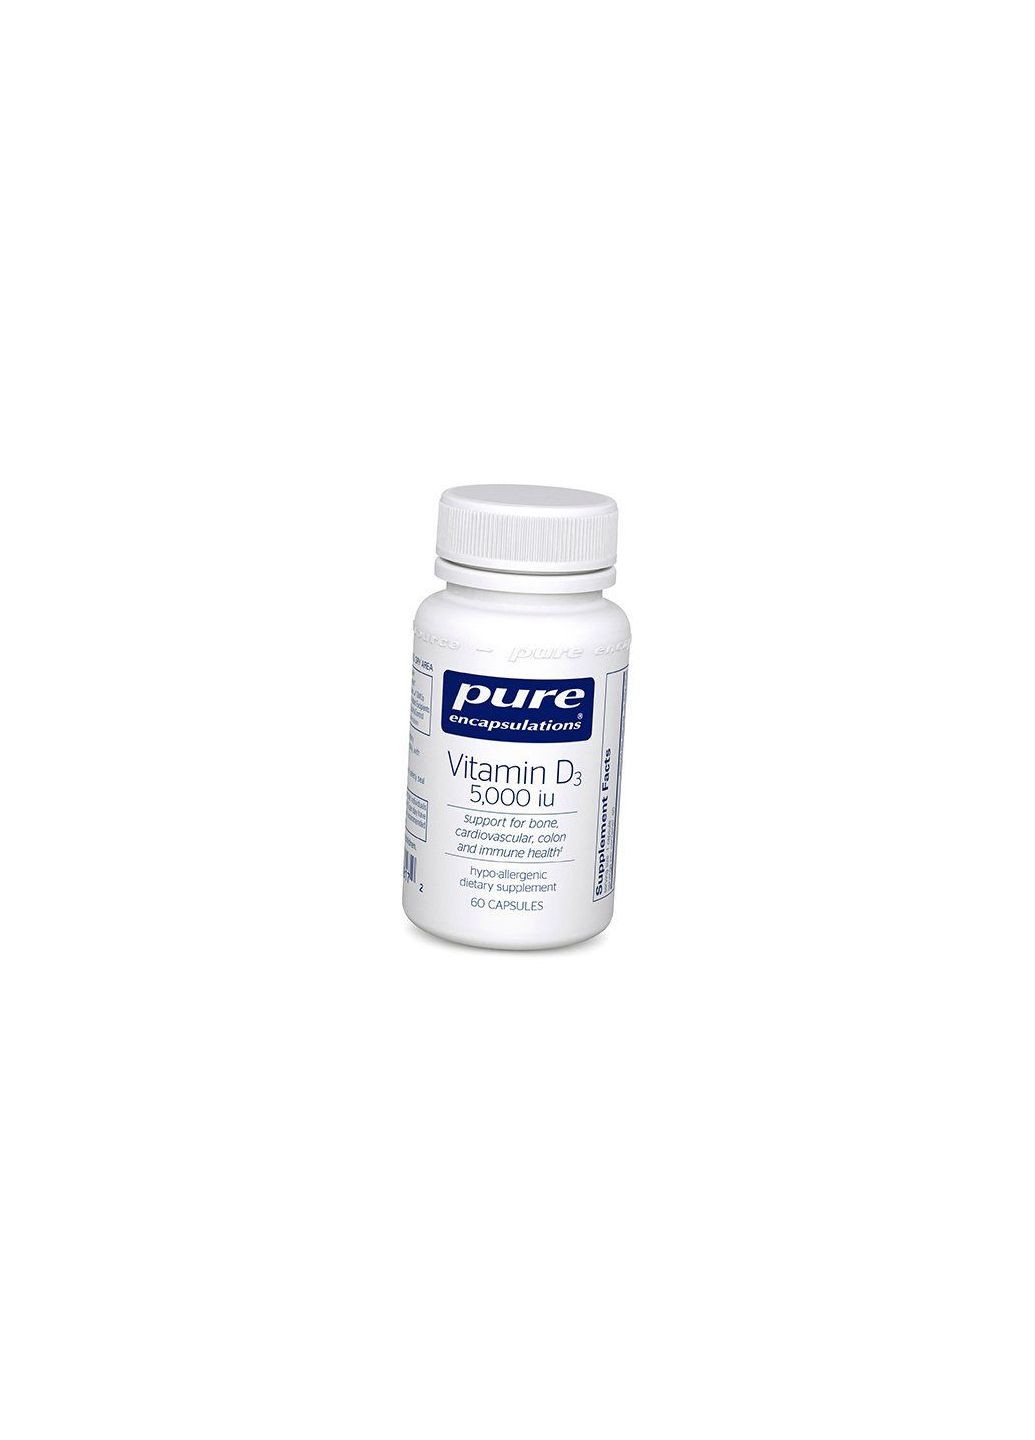 Вітамін Д3, Vitamin D3 5000, 60капс 36361082, (36361082) Pure Encapsulations (293254674)